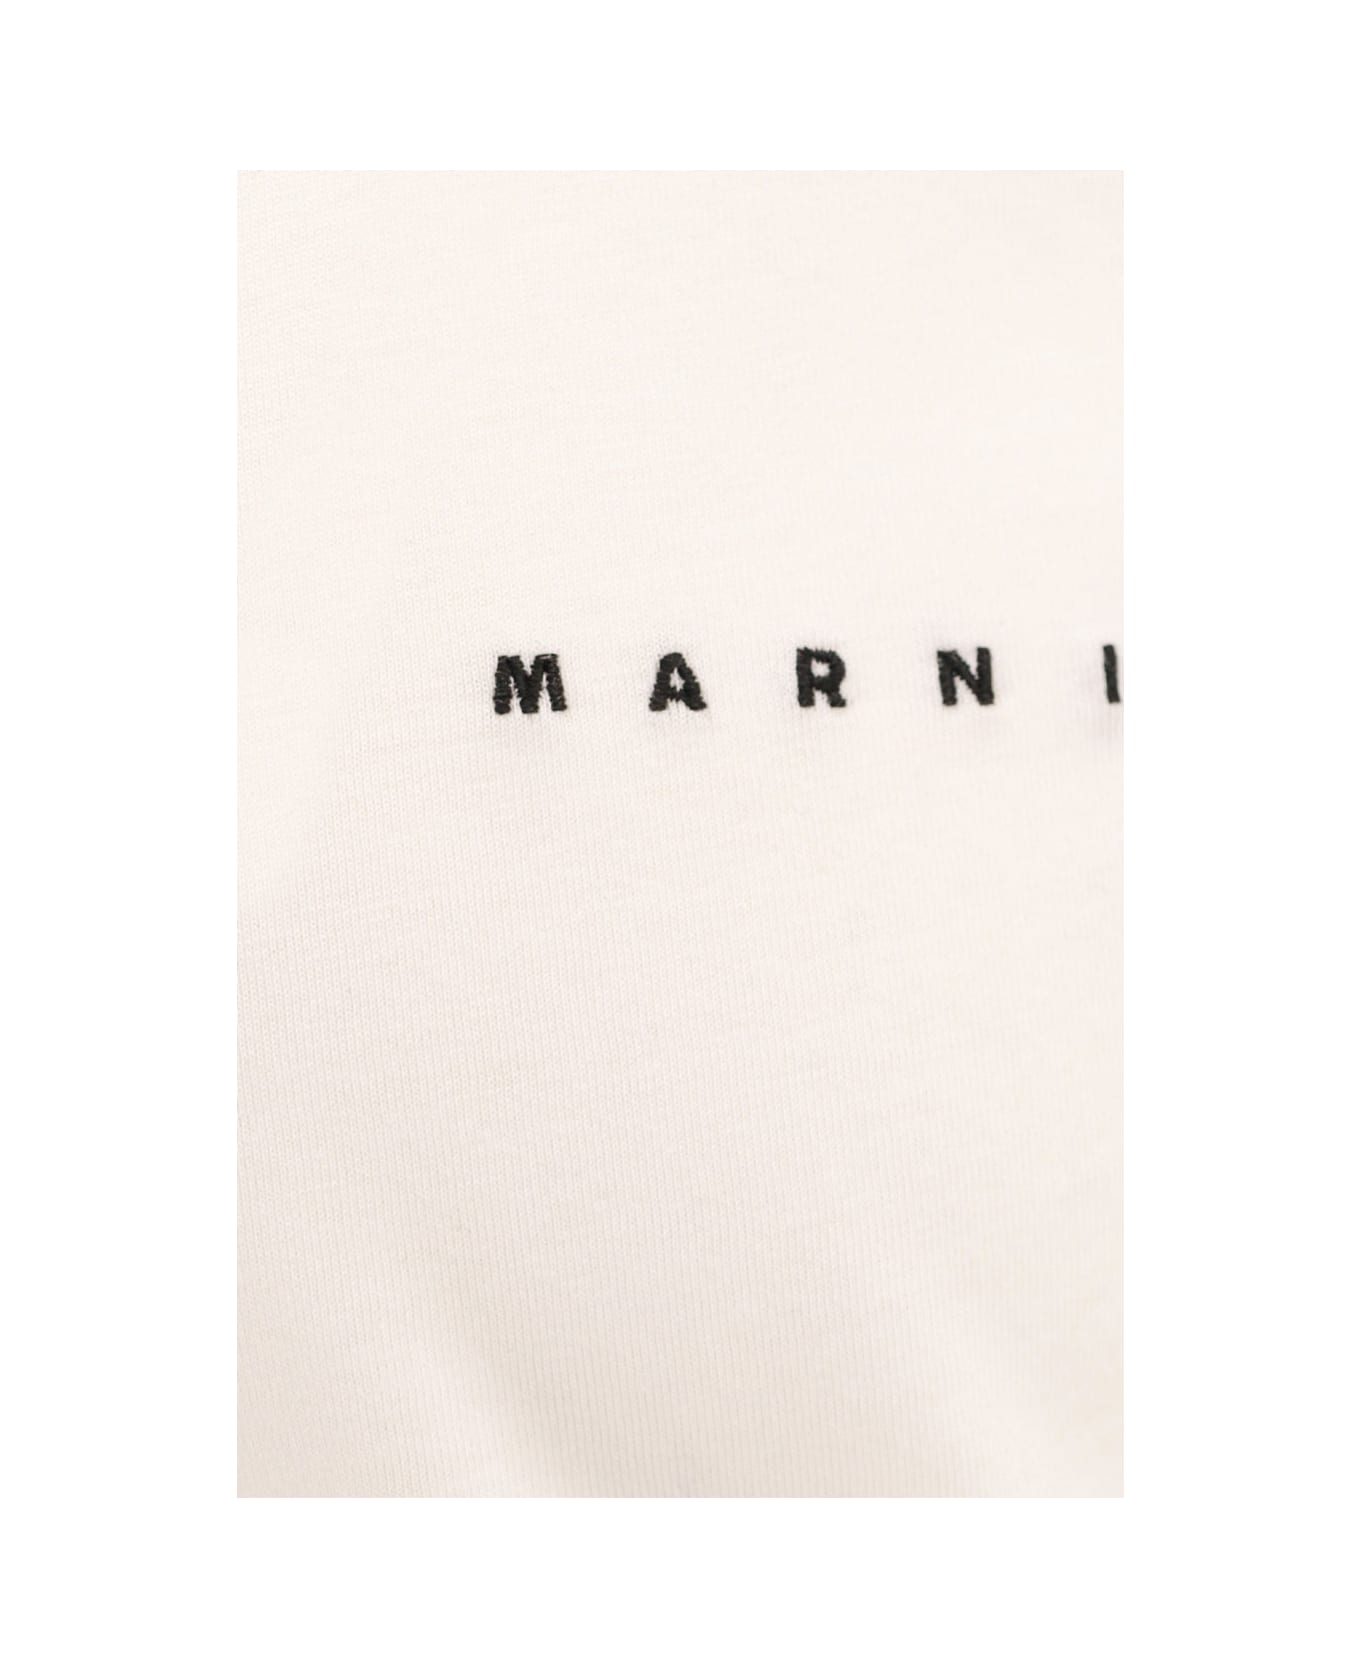 Marni T-shirt - Bianco